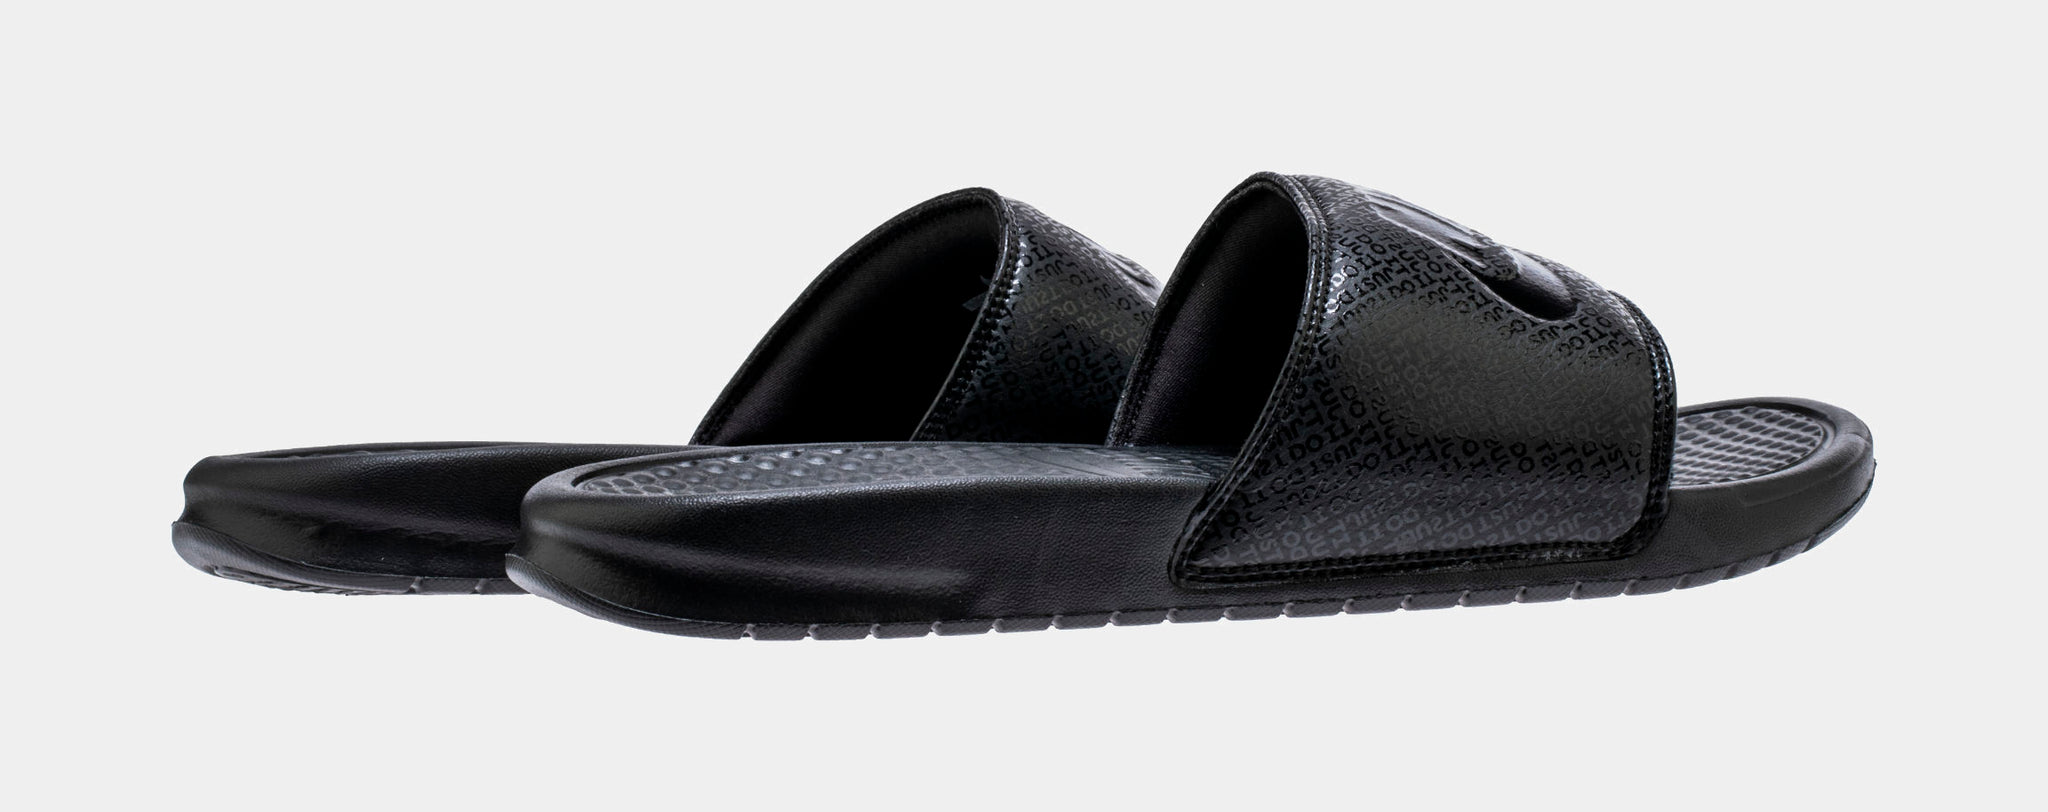 Nike Benassi JDI Mens Slide Sandal Black 343880 001 – Shoe